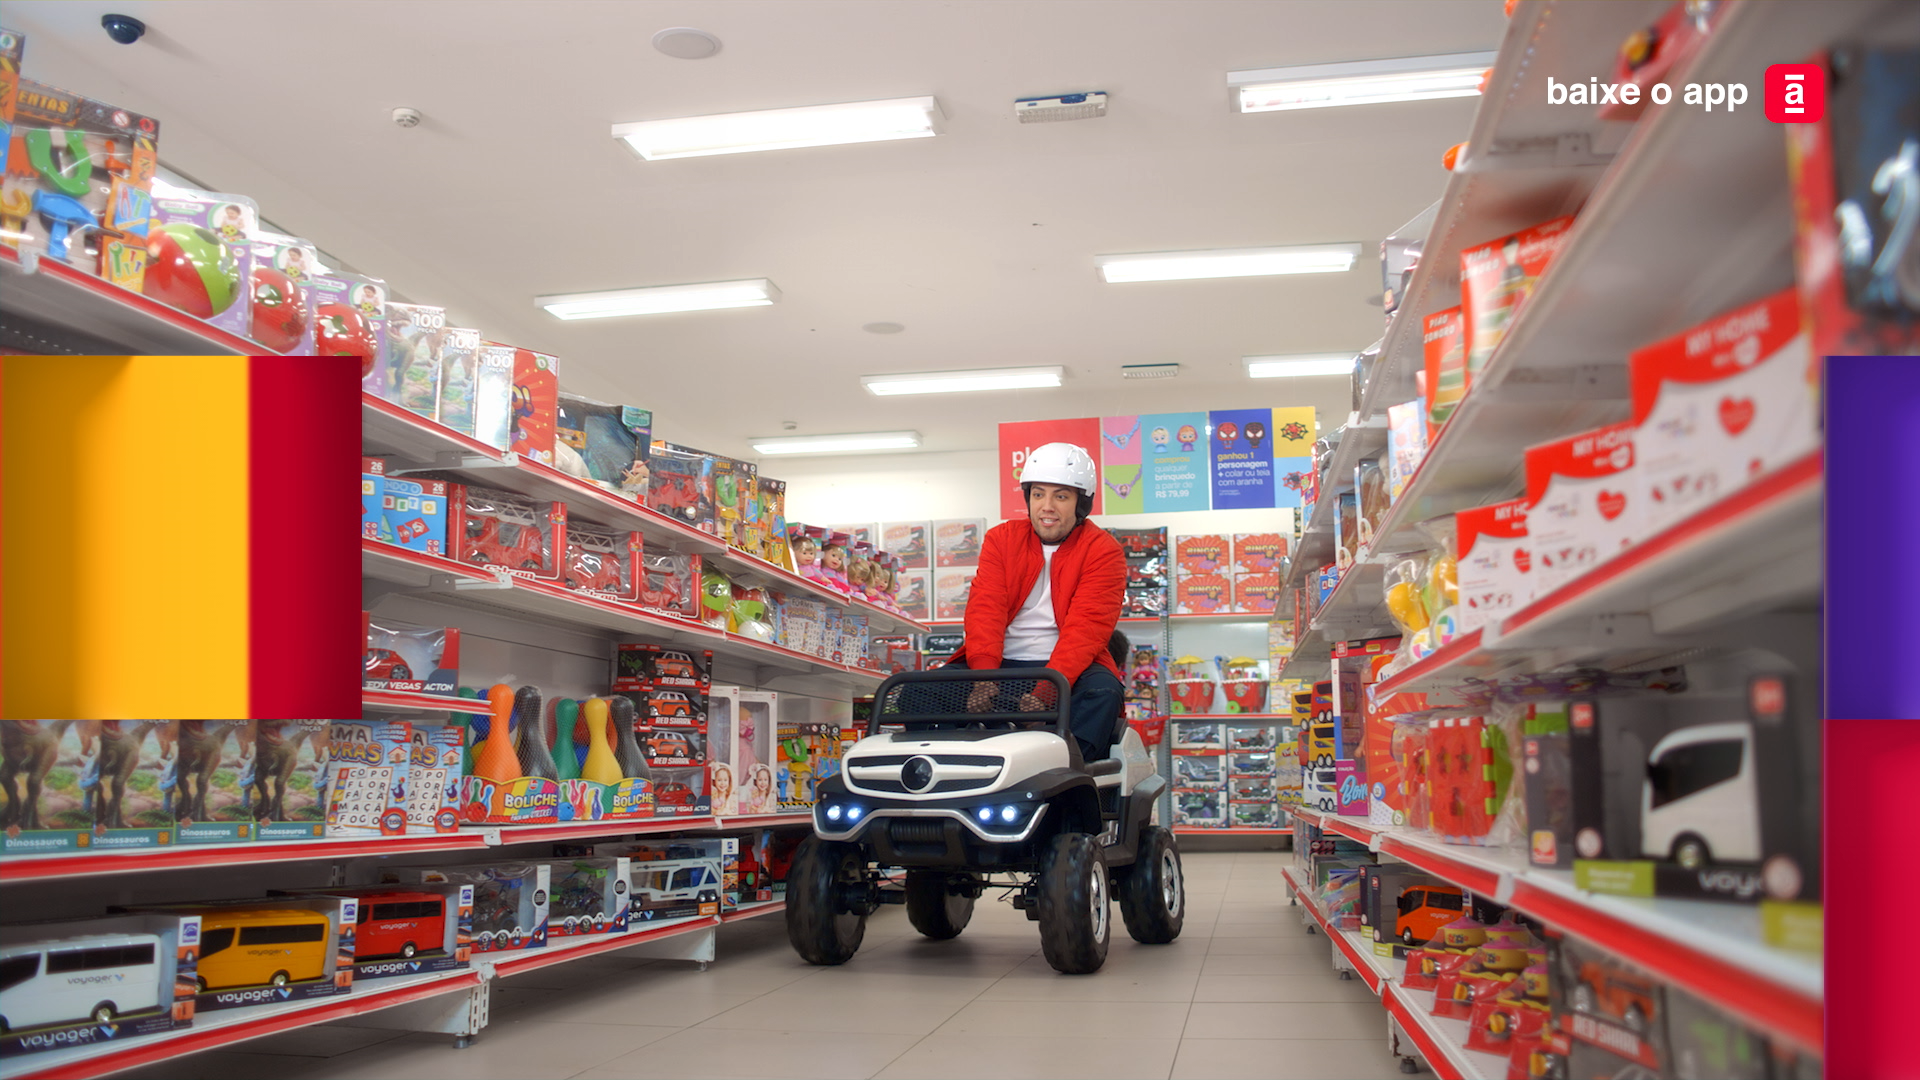 Na imagem o influenciador Lucas Rangel está dentro de um carrinho automático com um capacete correndo pelo corredor de uma das lojas Americanas